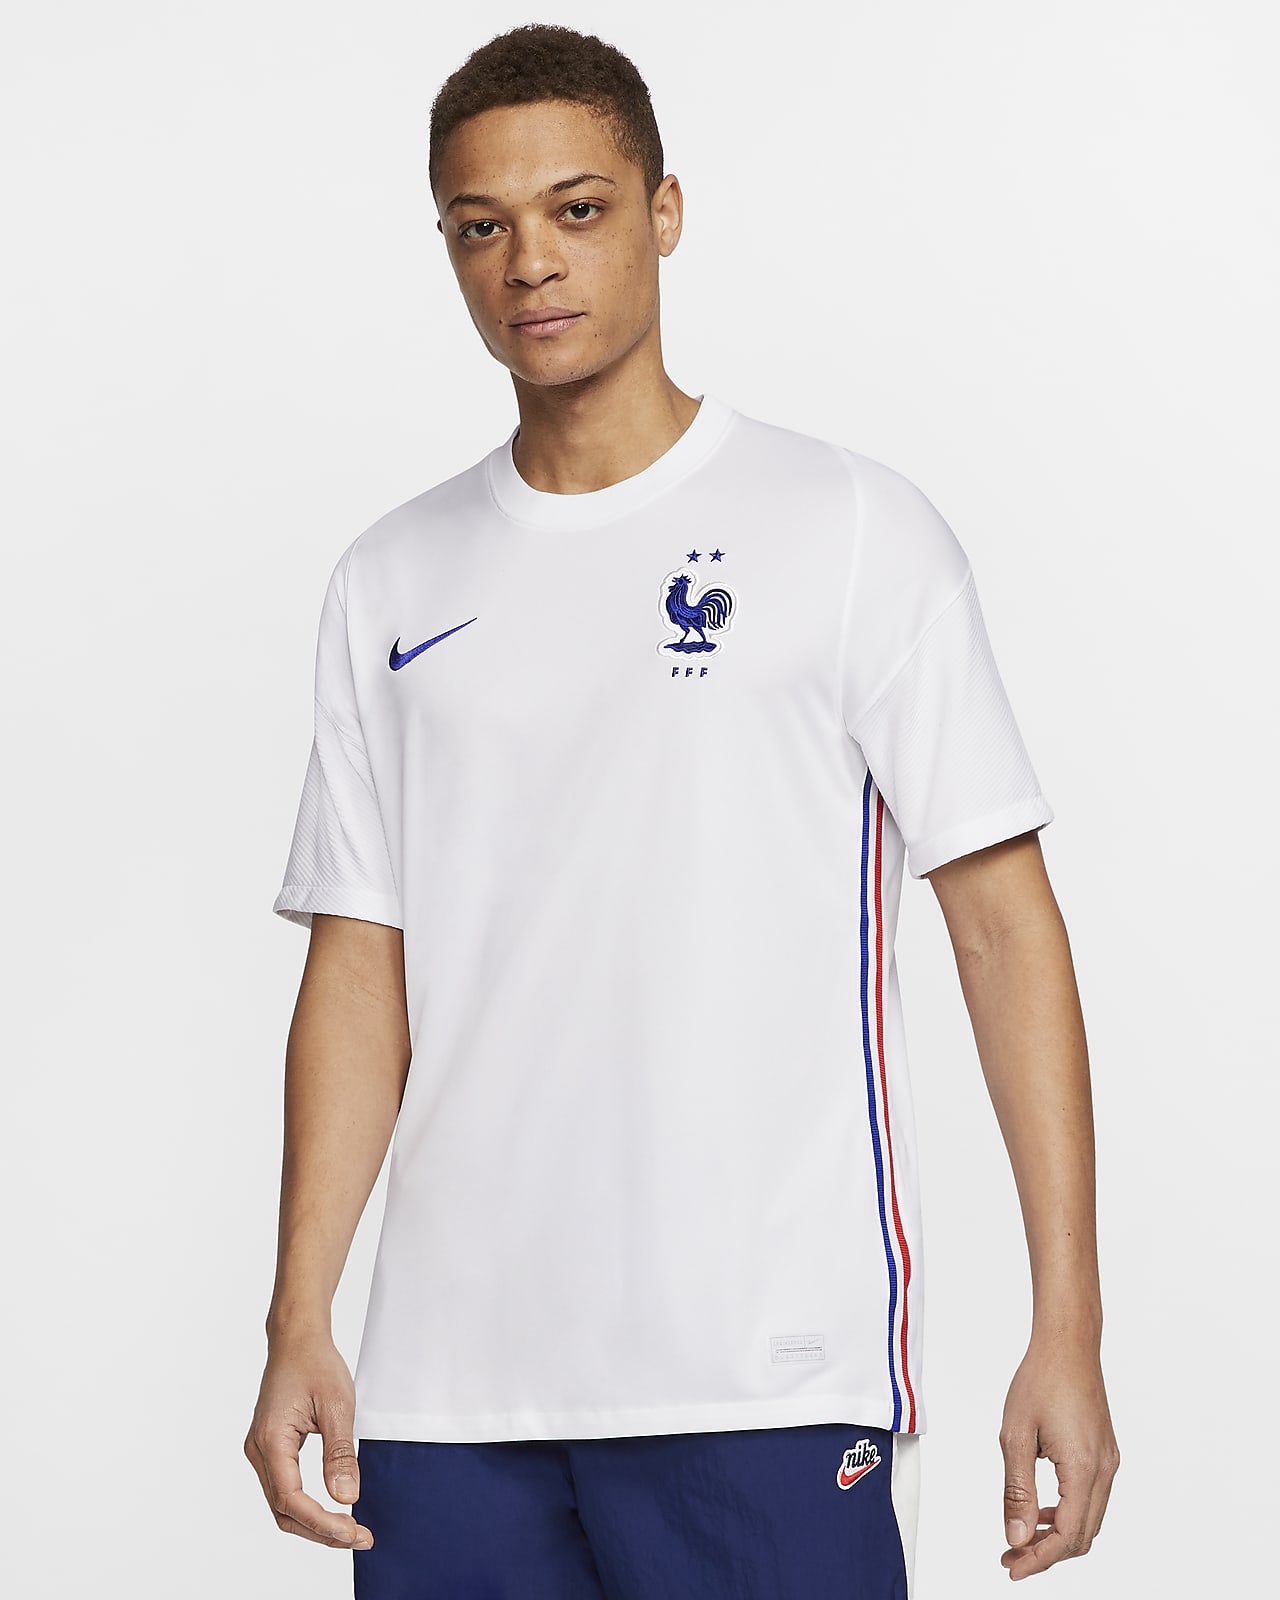 2020 赛季法国队客场球迷版男子足球球衣